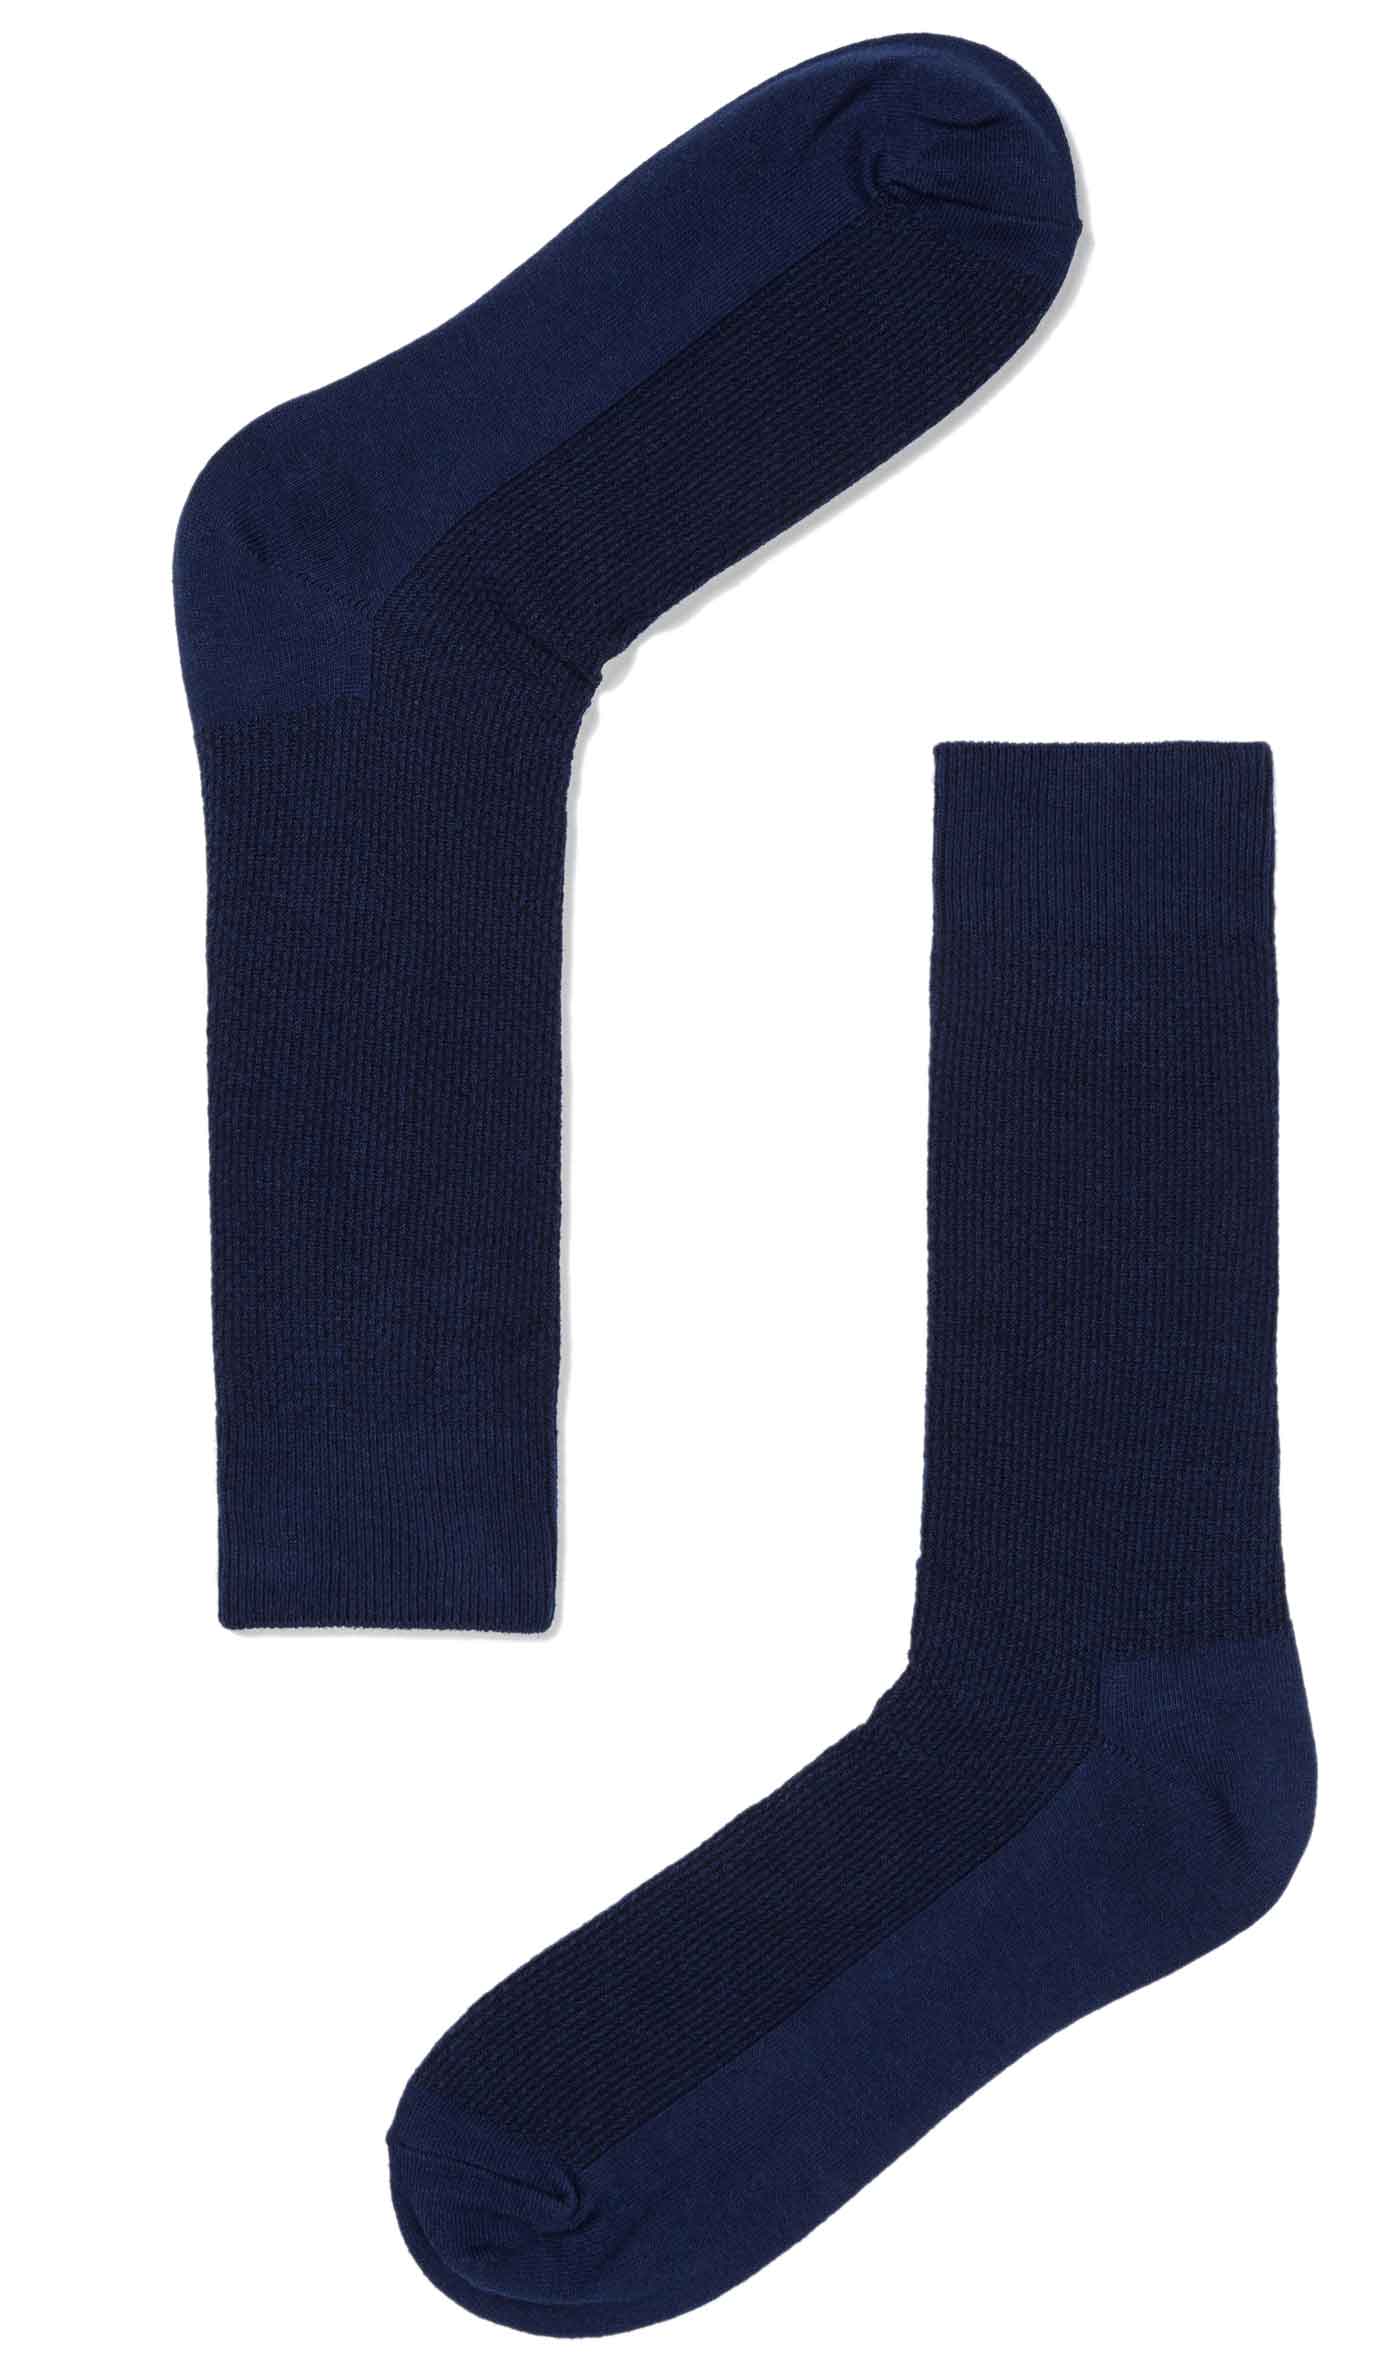 Navy Blue Textured Cotton-Blend Socks, Men's Solid Color Dress Socks